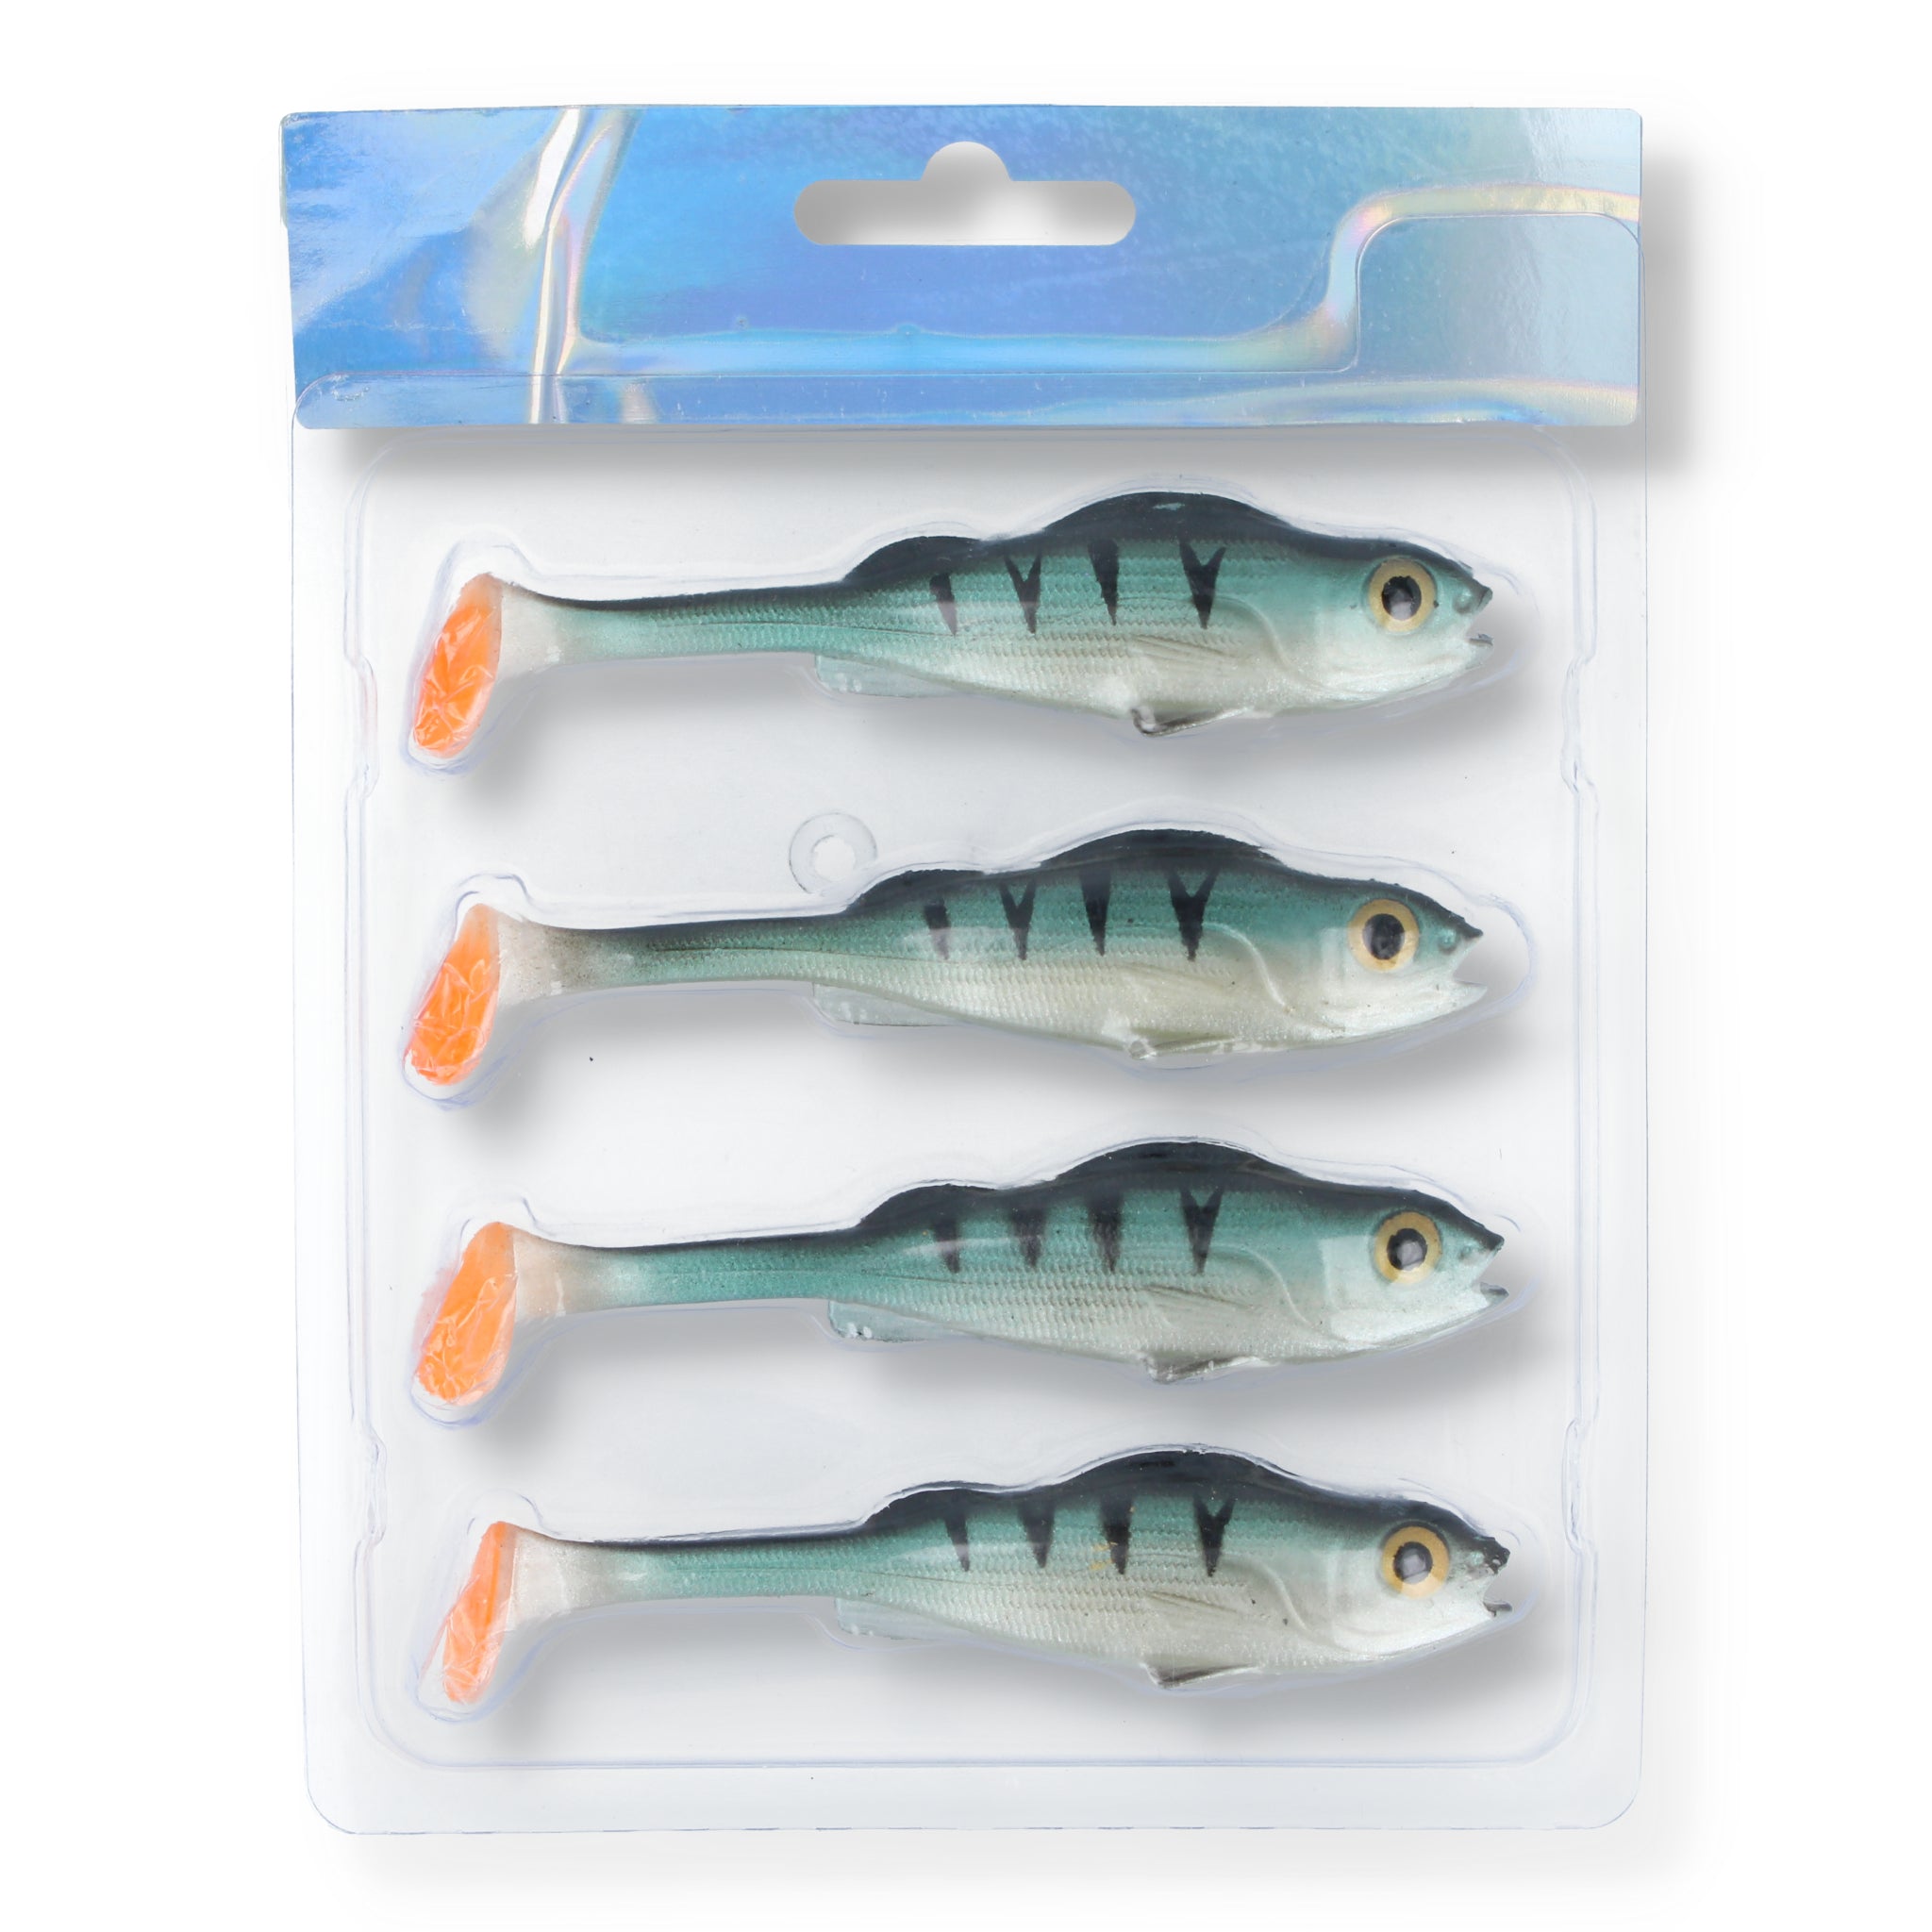 Mikado Real Fish Perch 3,7"